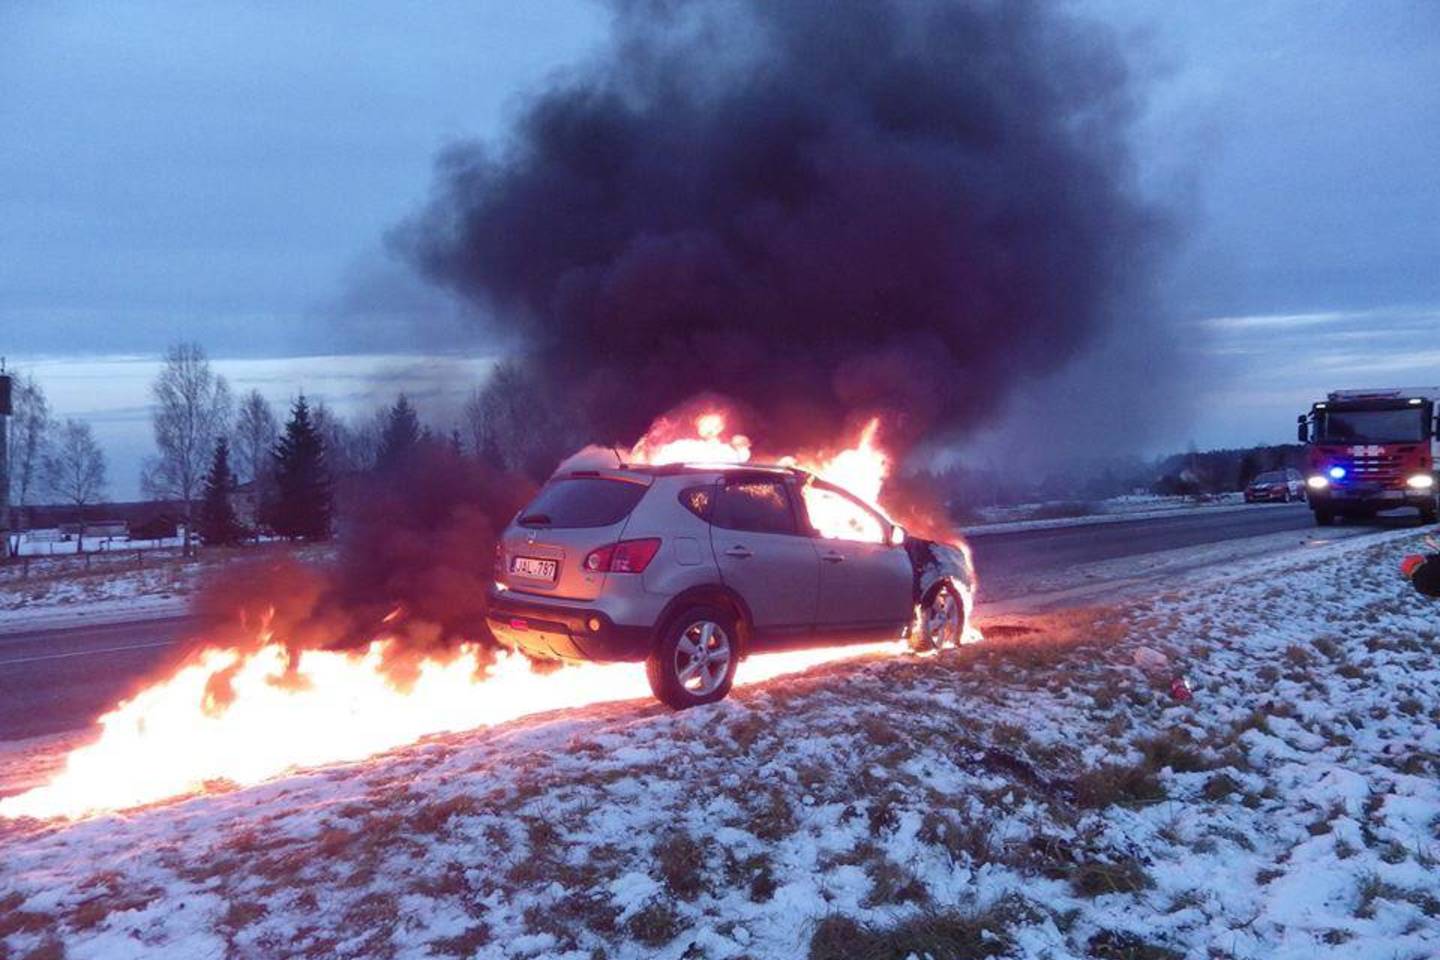  Molėtų r. kelyje užsiliepsnojęs sudegė dyzelinis „Nissan Qashqai“.<br> Facebook/Molėtų priešgaisrinė gelbėjimo tarnyba nuotr.